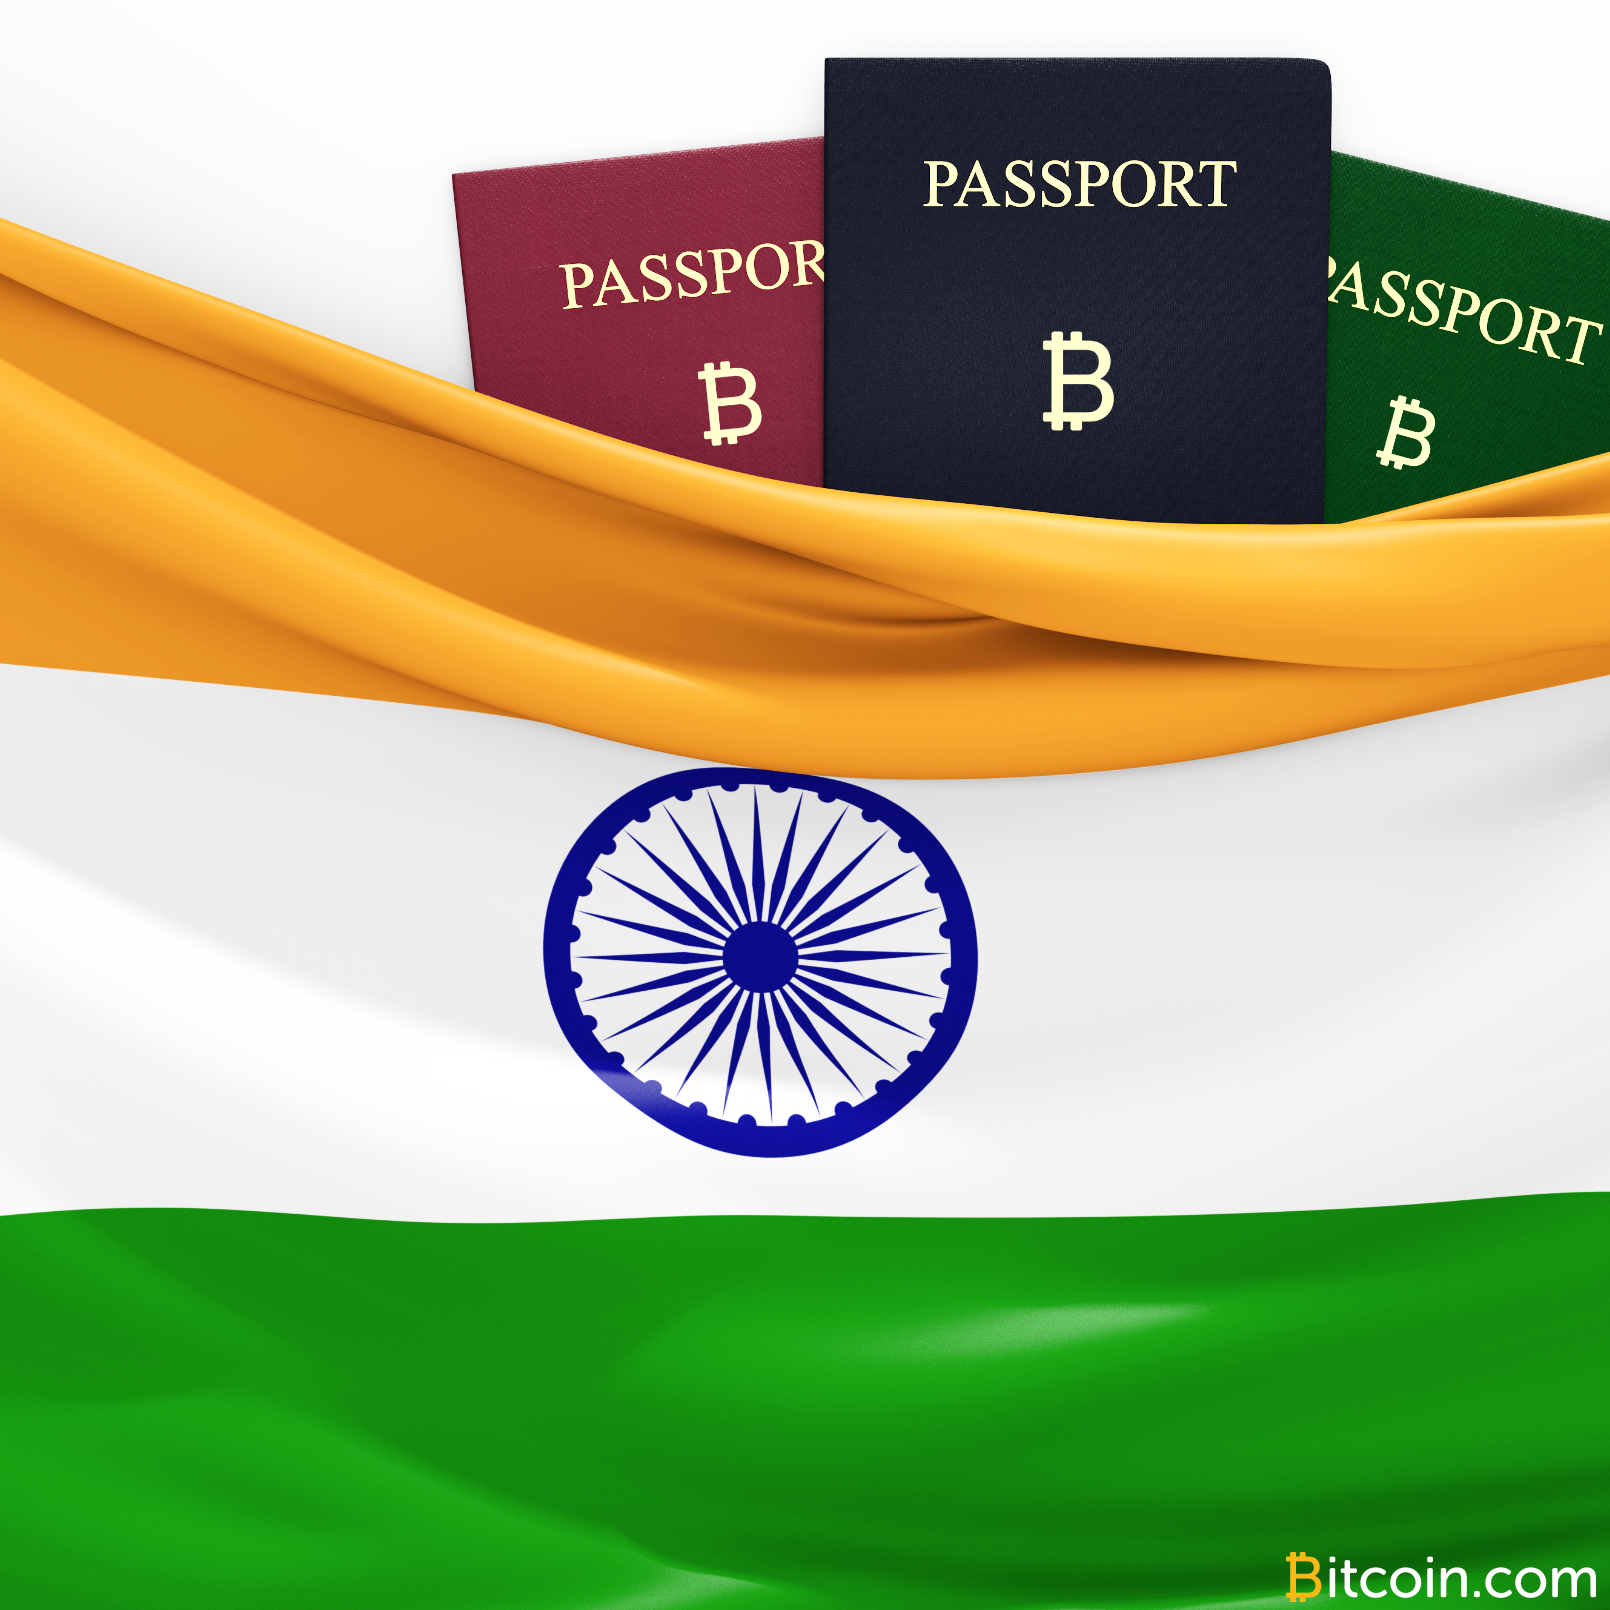 Indians Look to Buy Bitcoin Overseas As Regulations Tighten